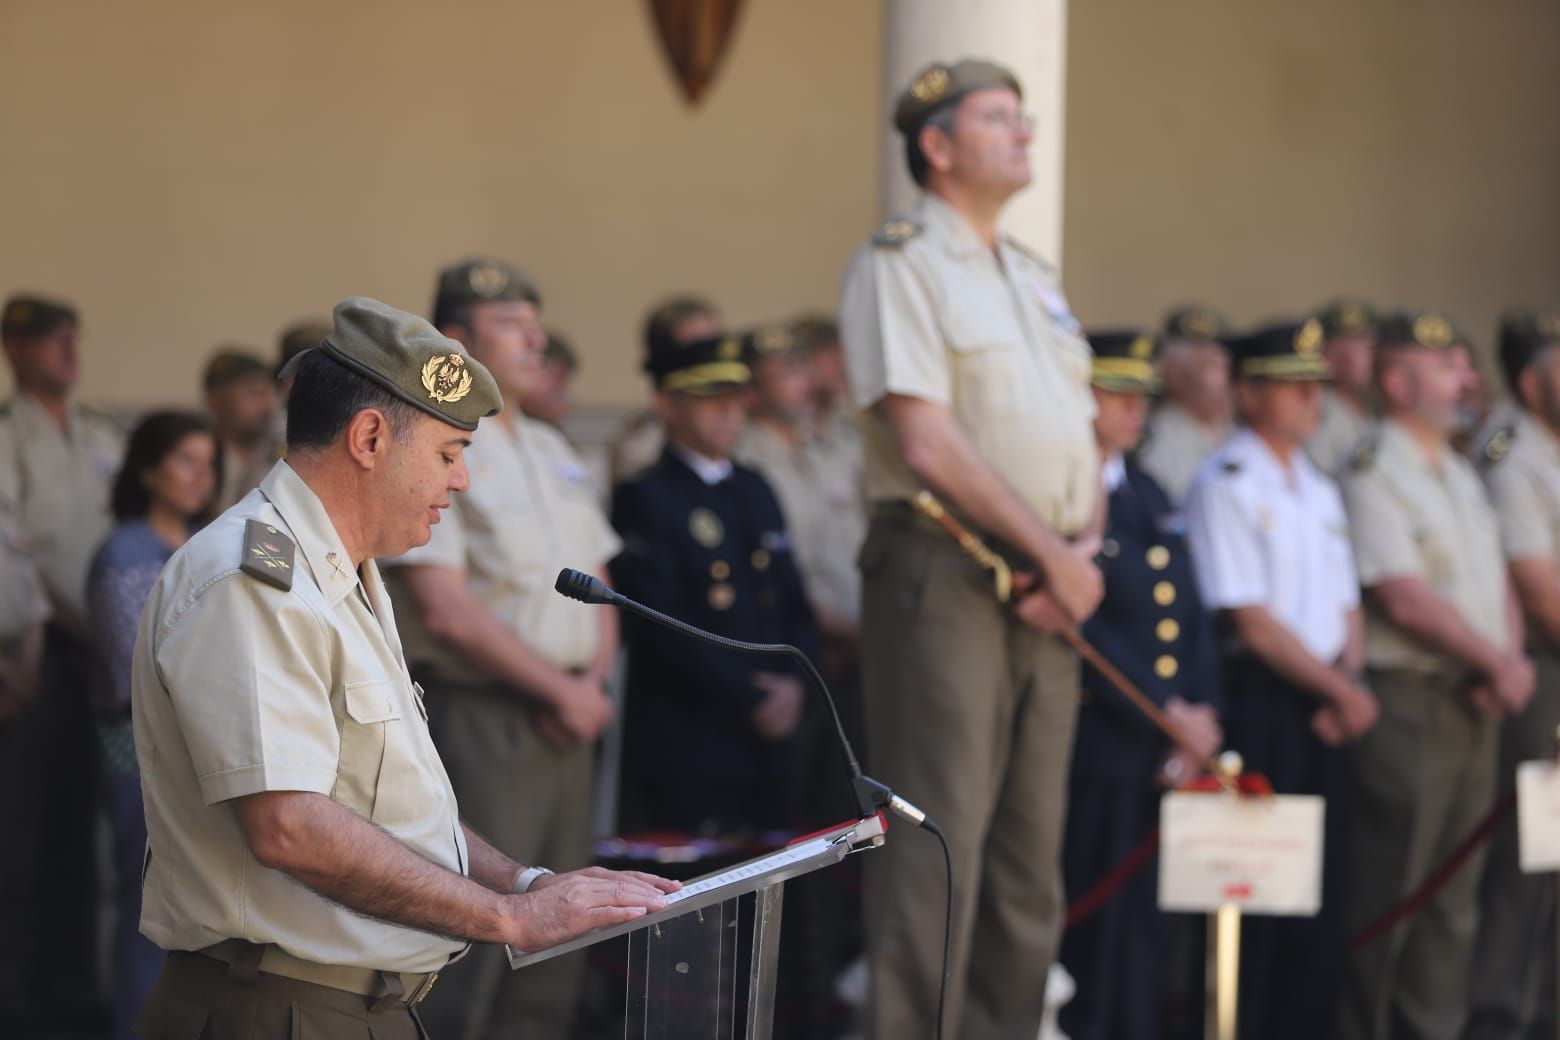 El JEME preside en el Establecimiento 'Palacio Real de Valladolid' la reunión de mandos de la Inspección General del Ejército